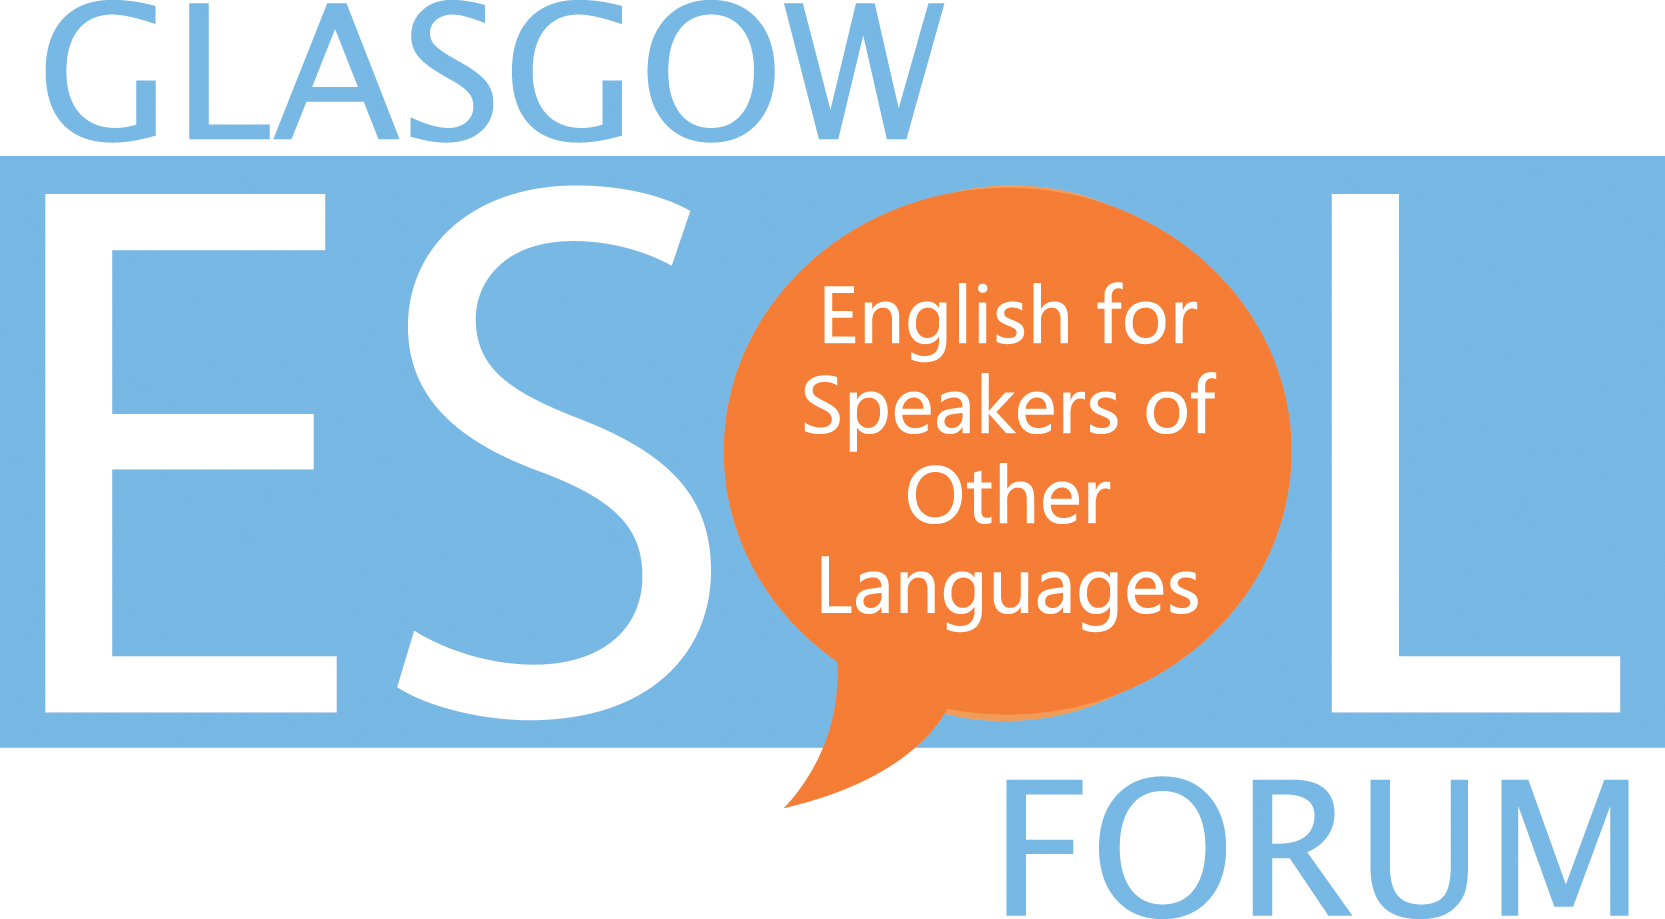 Glasgow ESOL Forum